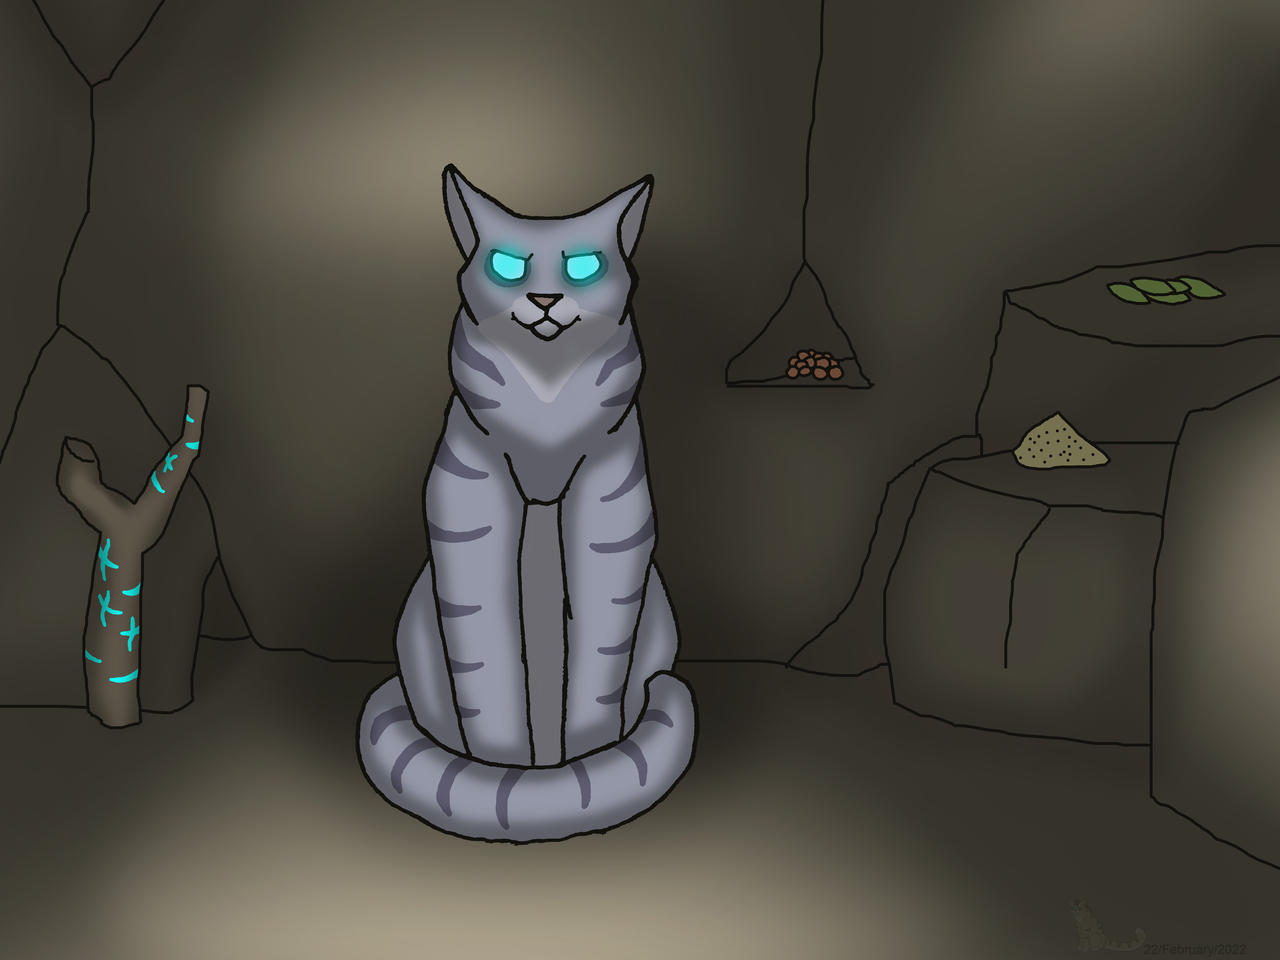 Jayfeather-warrior-cat- by xoxeaglexox on DeviantArt